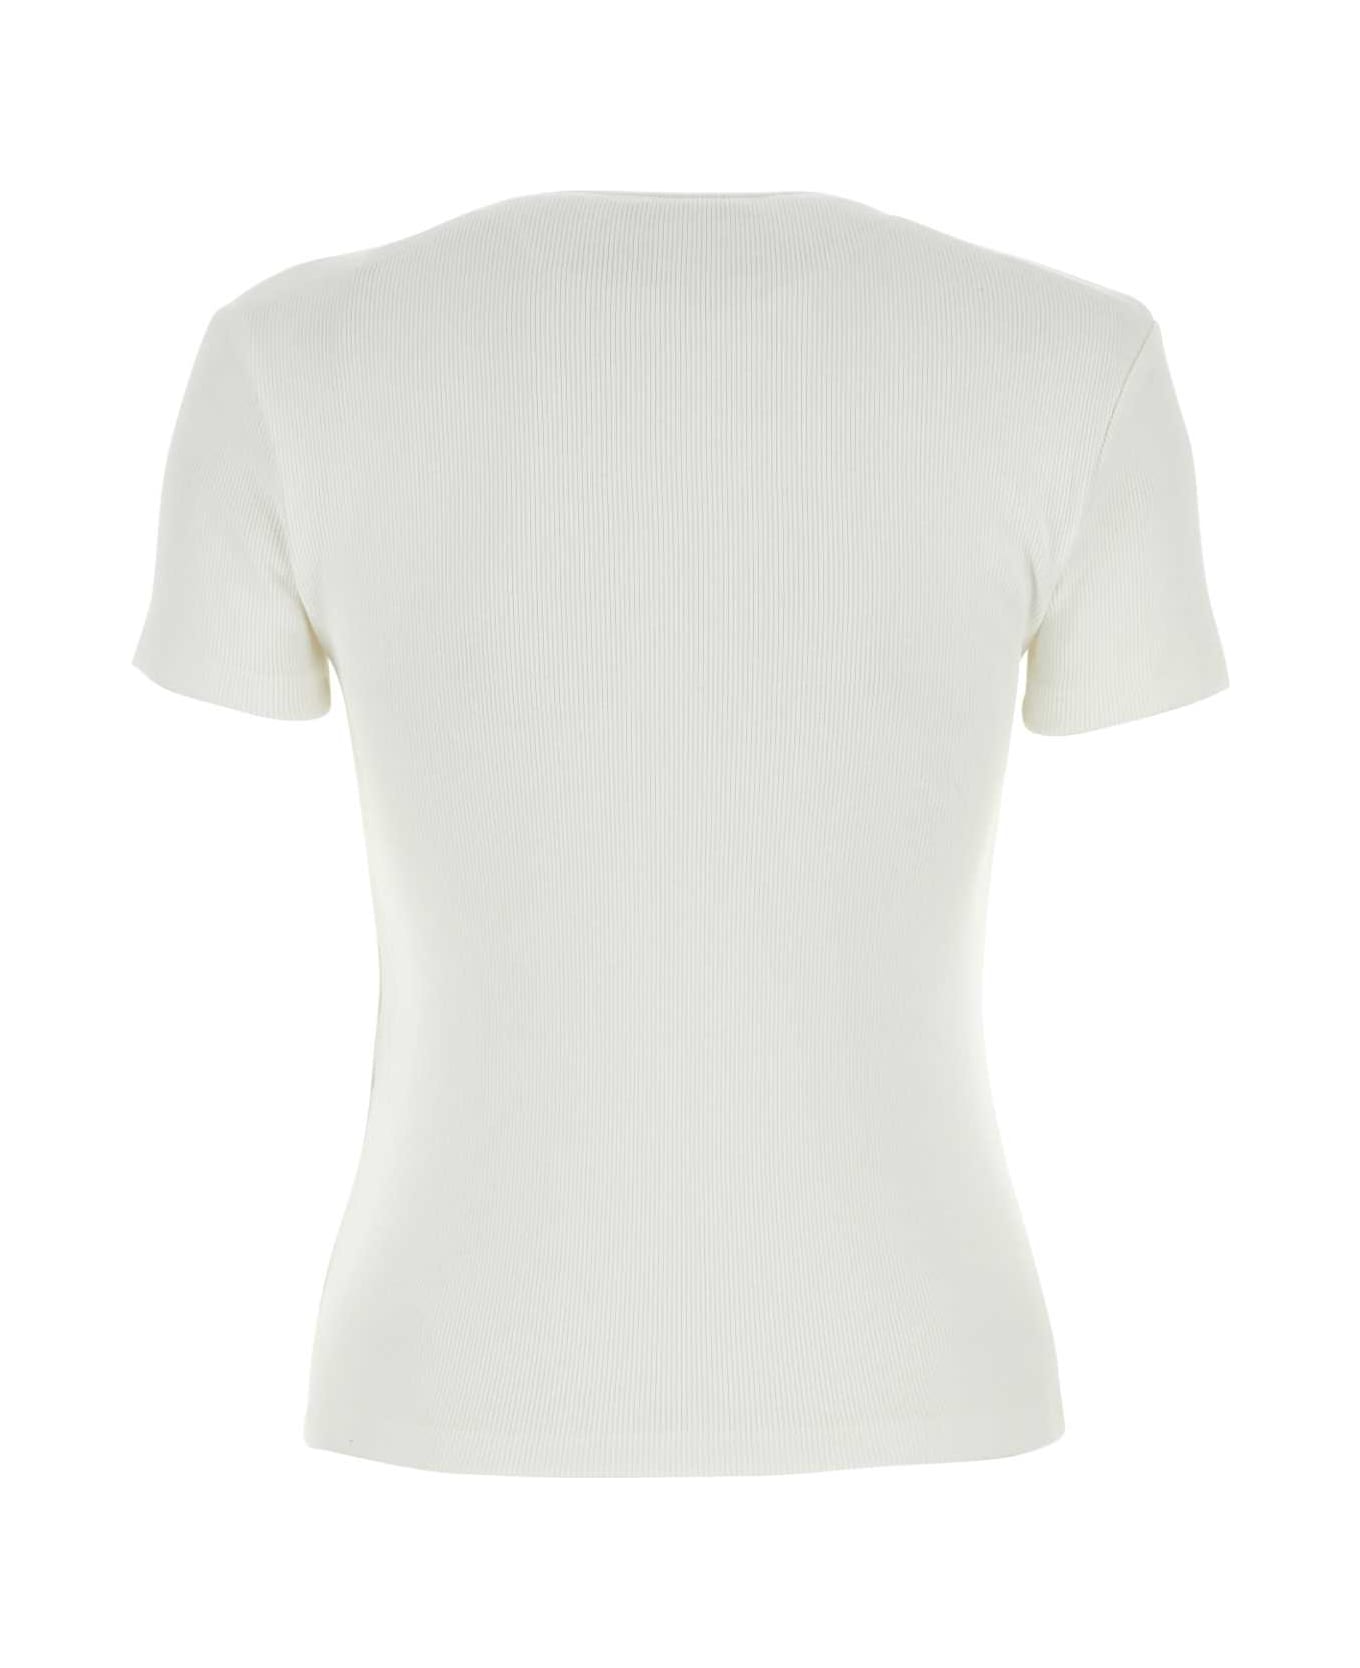 Off-White White Stretch Cotton T-shirt - WHITEBLACK